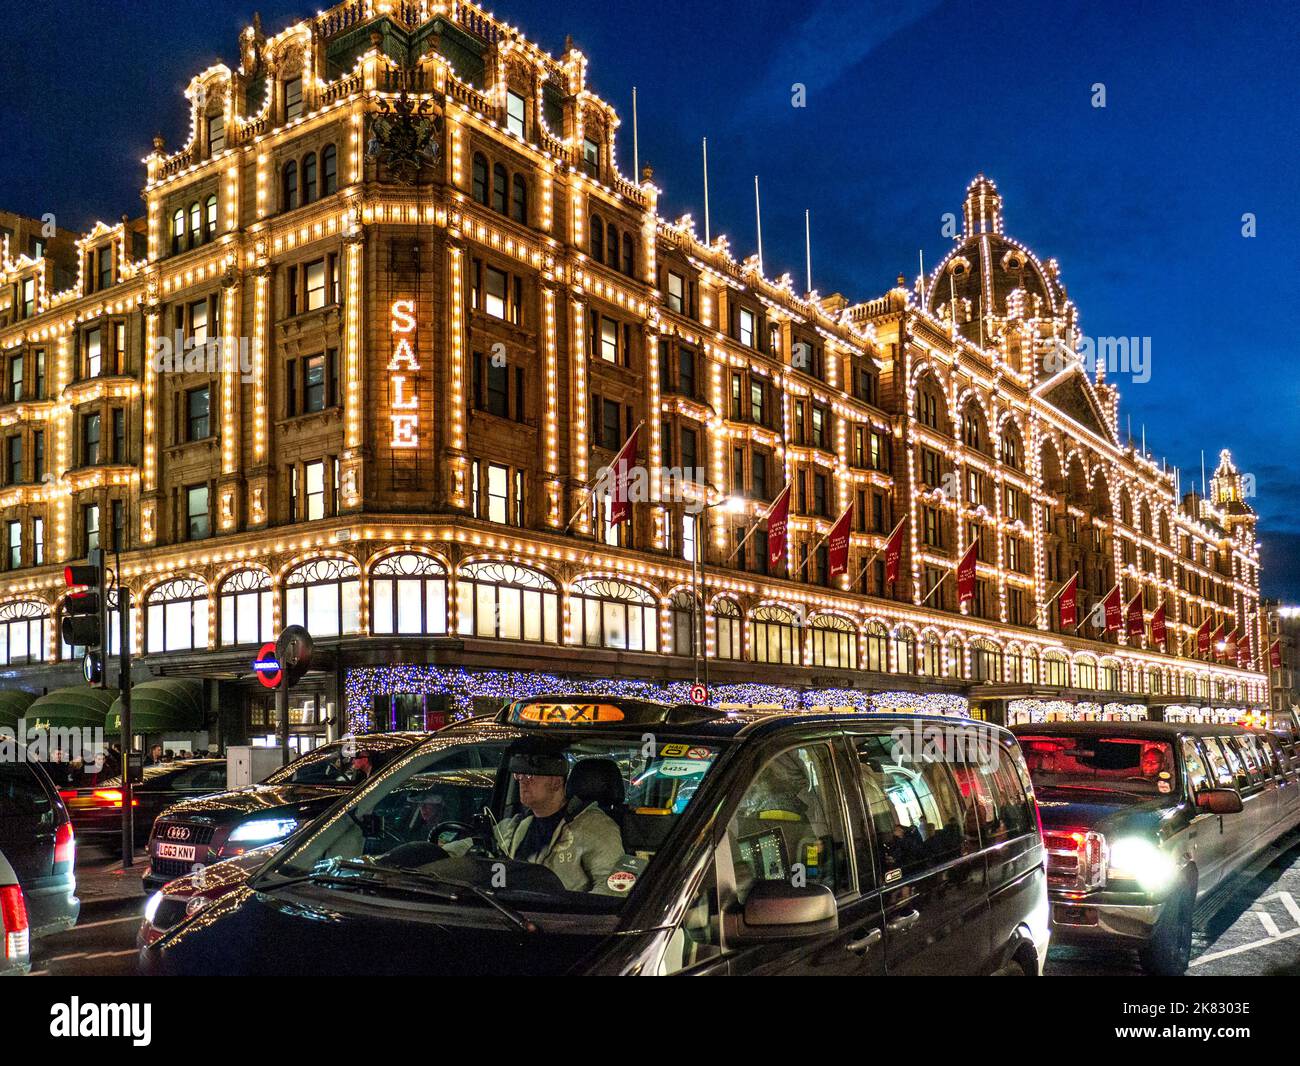 VERKAUF Harrods Kaufhaus in der Abenddämmerung mit Verkaufsschild Käufer und vorbei an Taxis Knightsbridge London SW1 Stockfoto